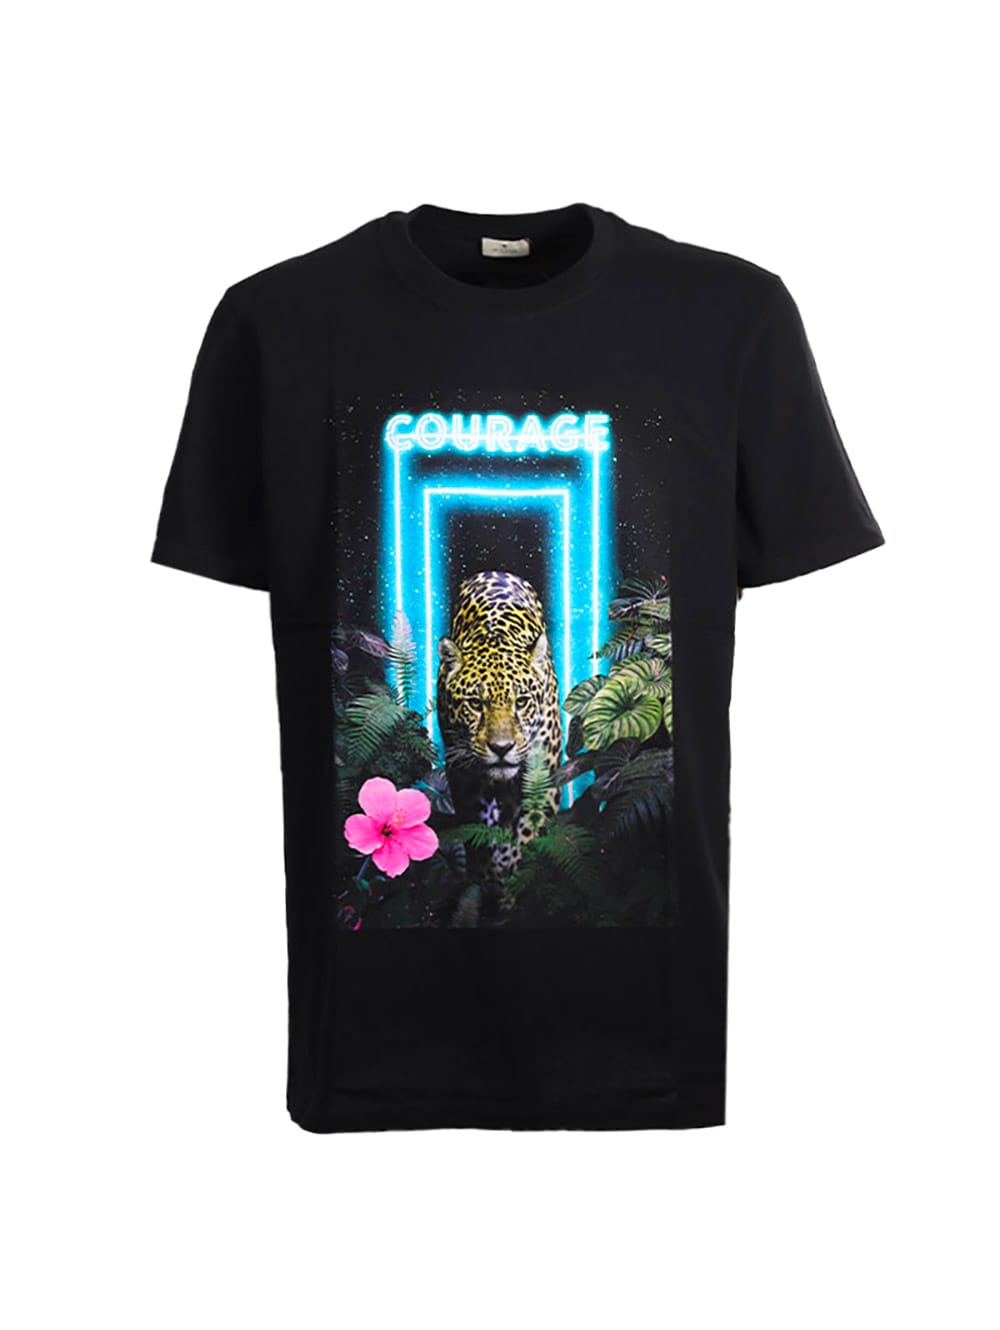 Etro Courage Print T-shirt